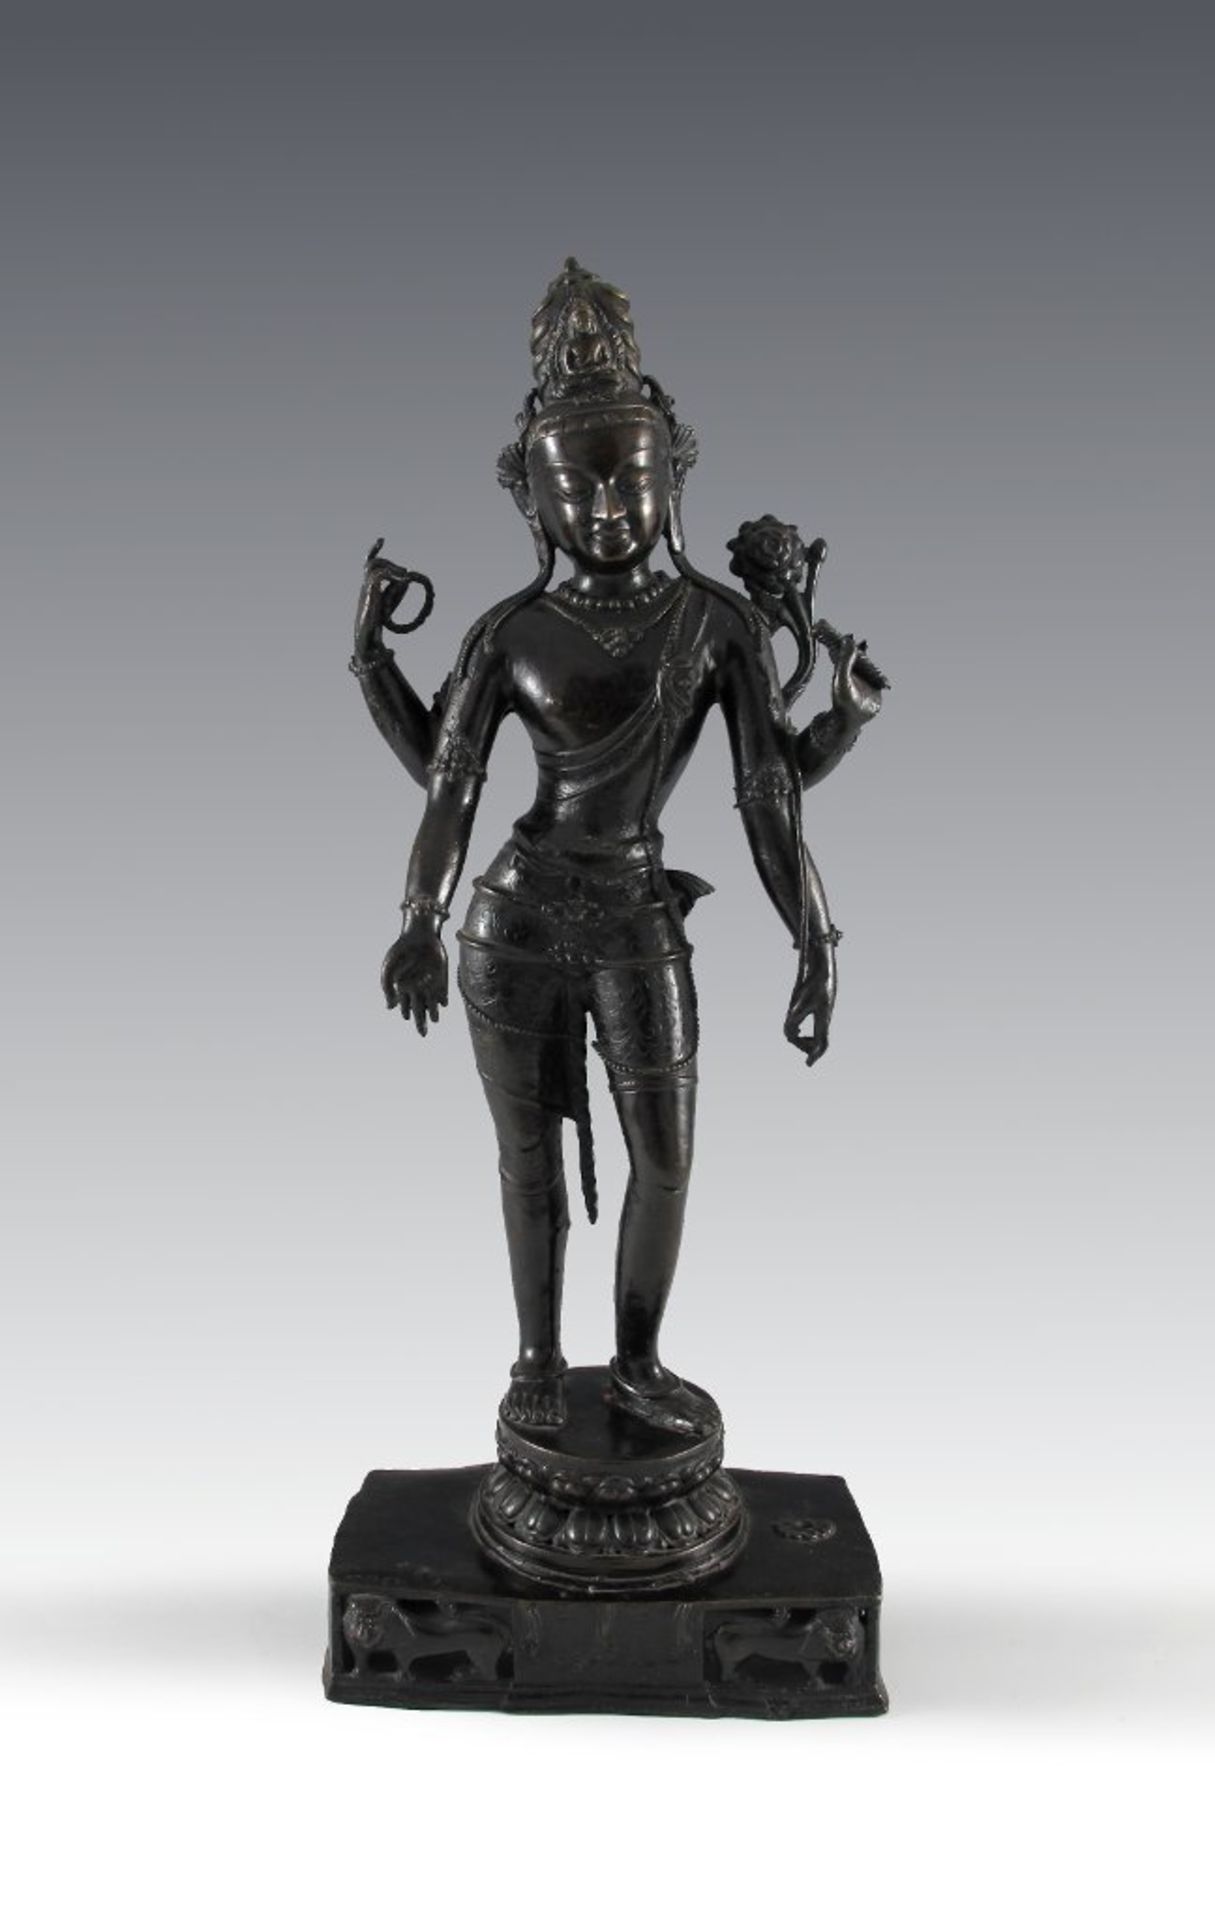 Vierarmiger Vishnu im Stil des 15. Jh. Dunkel patinierte Bronze. 19./20. Jh. H 59 cm